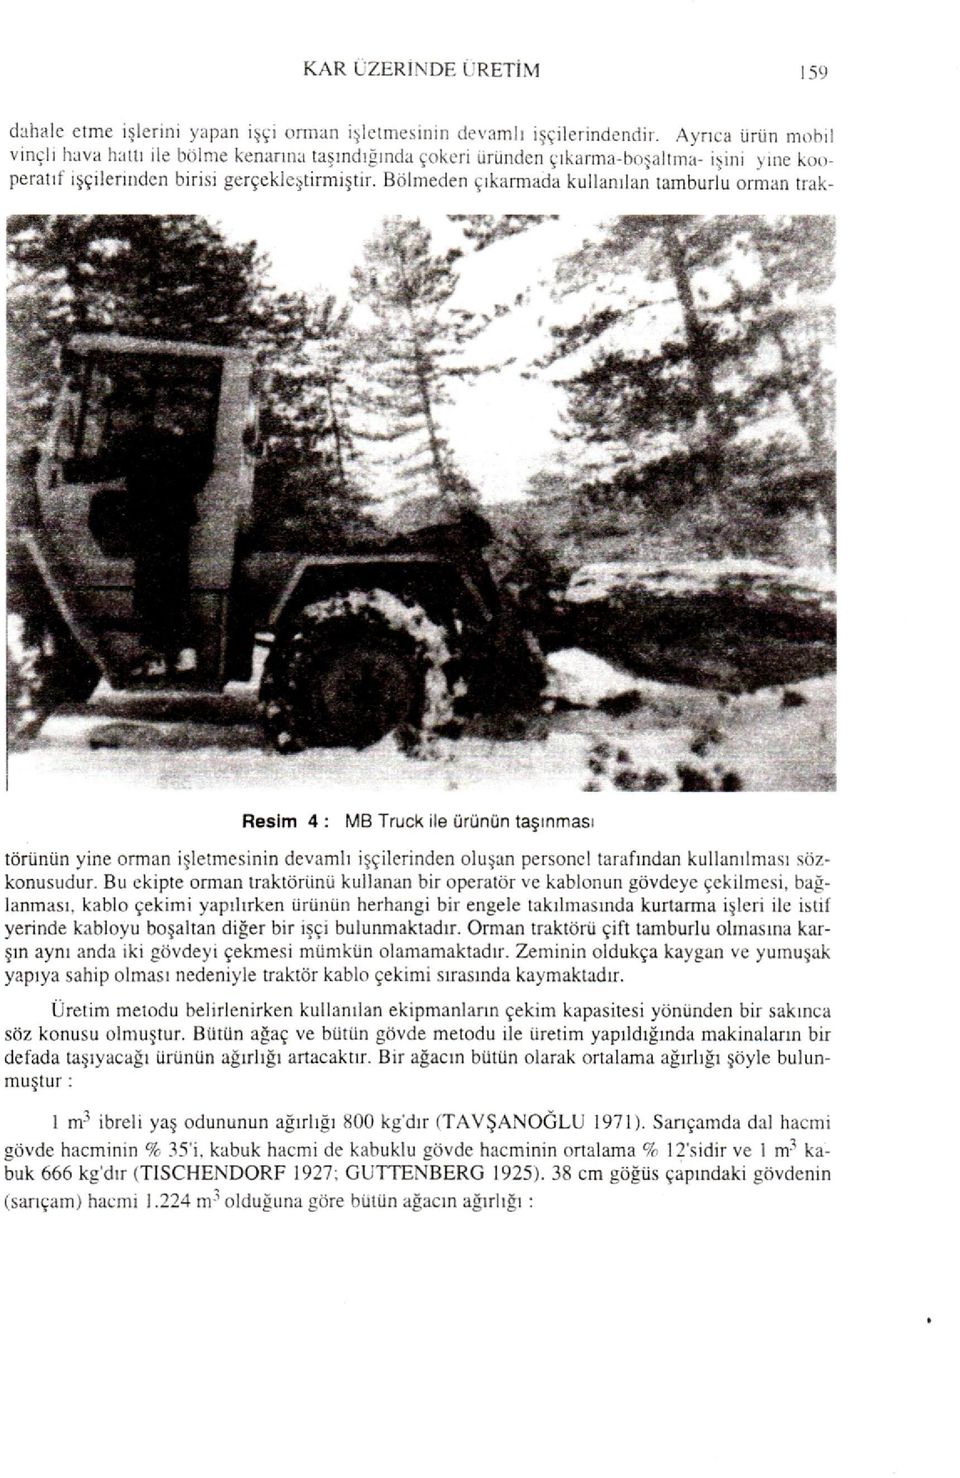 Bölmeden çıkarmada kullanılan tamburlu orman trak- Resim 4: MB Truck ile ürünün taşınması törünün yine orman işletmesinin devamlı işçilerinden oluşan personel tarafından kullanılması sözkonusudur.